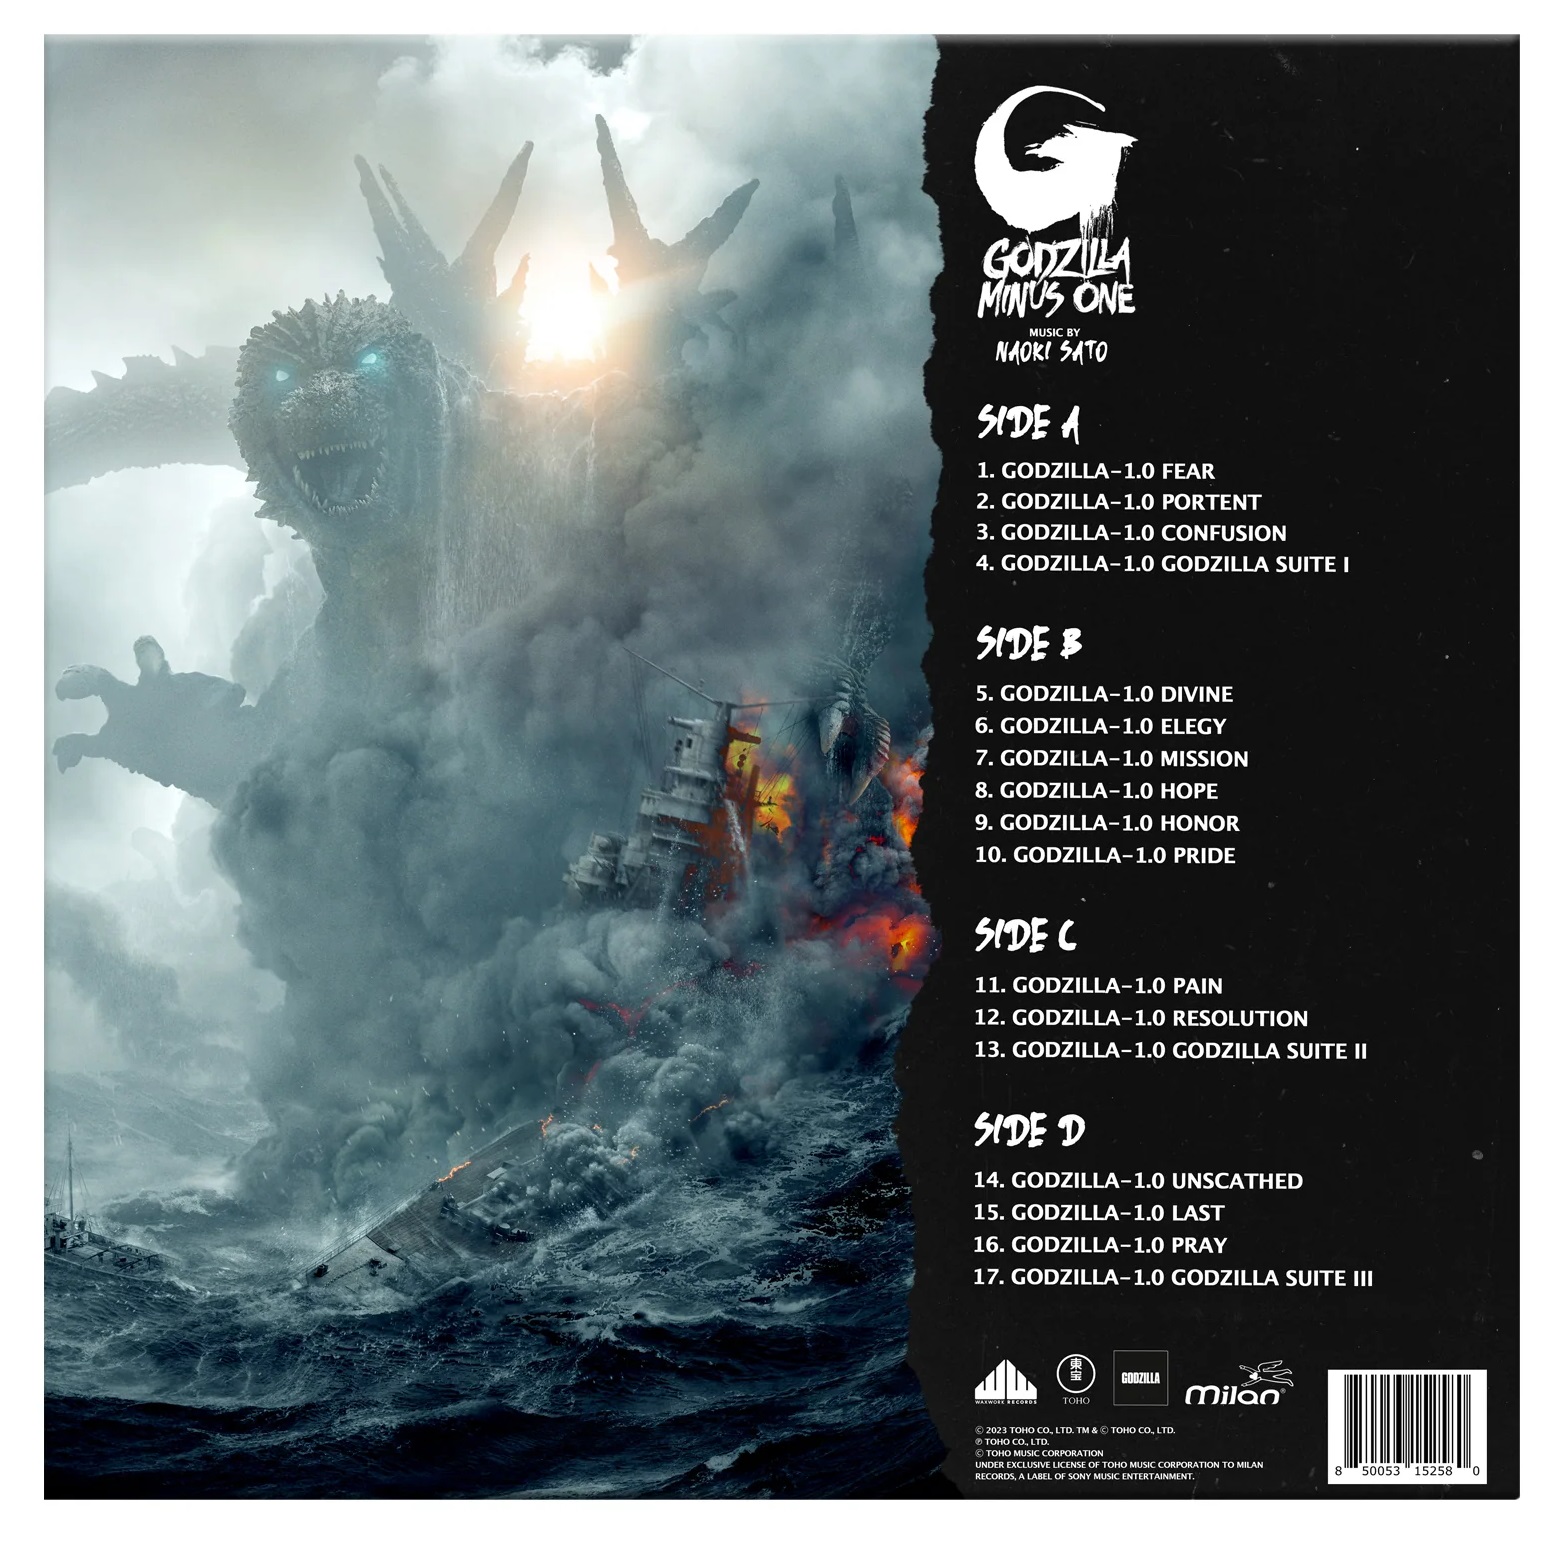 EAN : 0850053152580 - Godzilla Minus One  | Double Vinyle Coloré